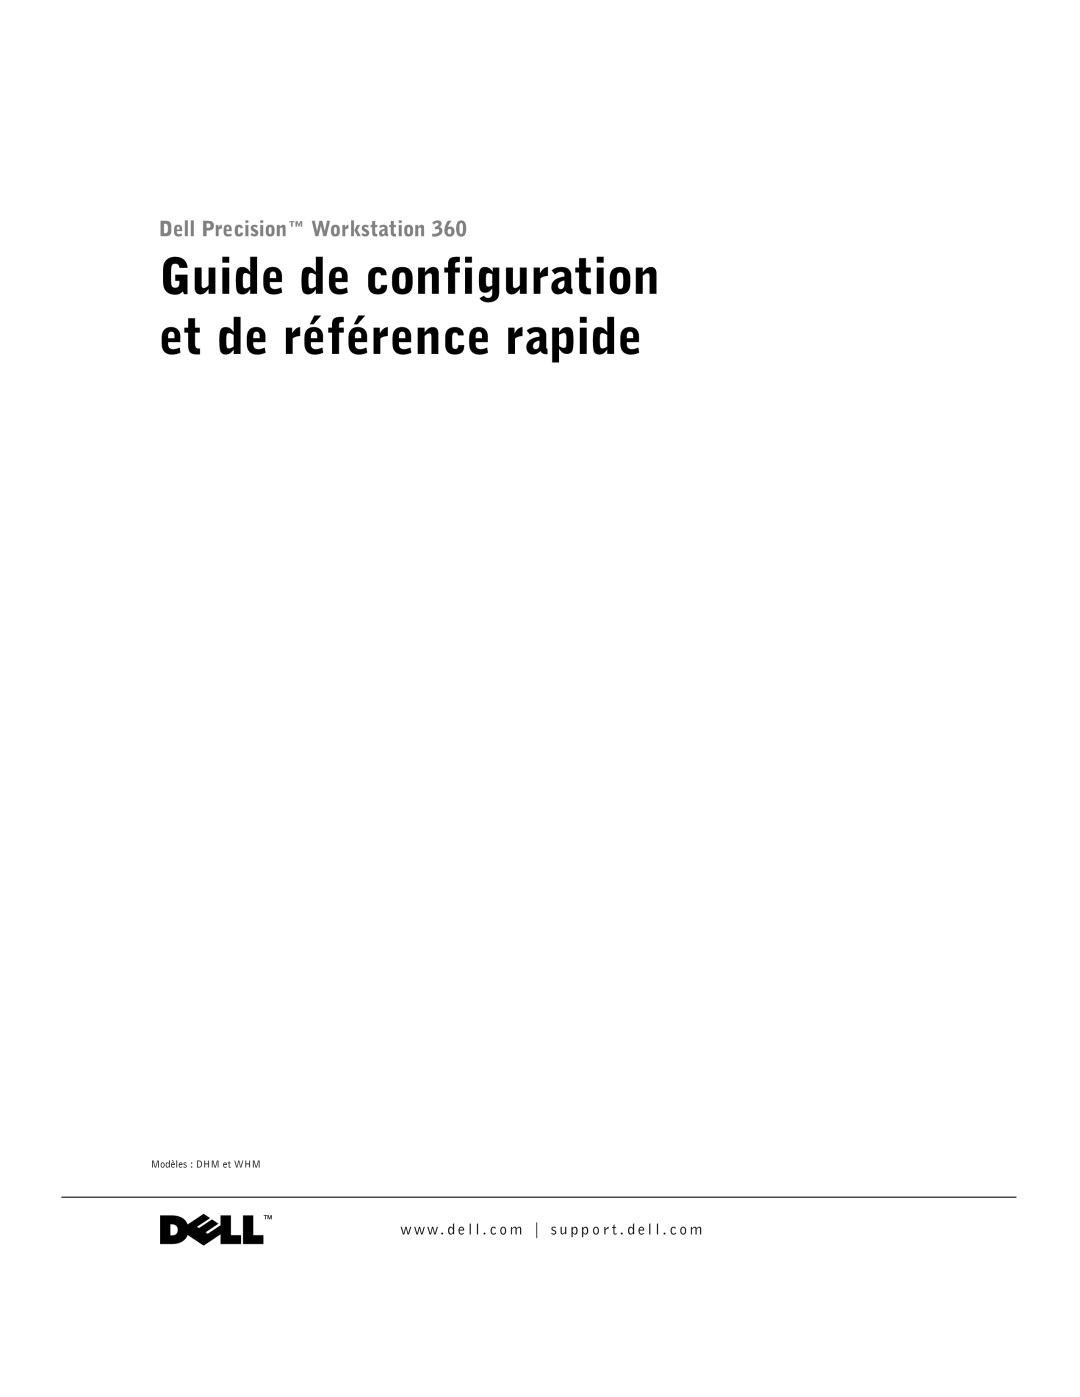 Dell F0276 manual Guide de configuration et de référence rapide 